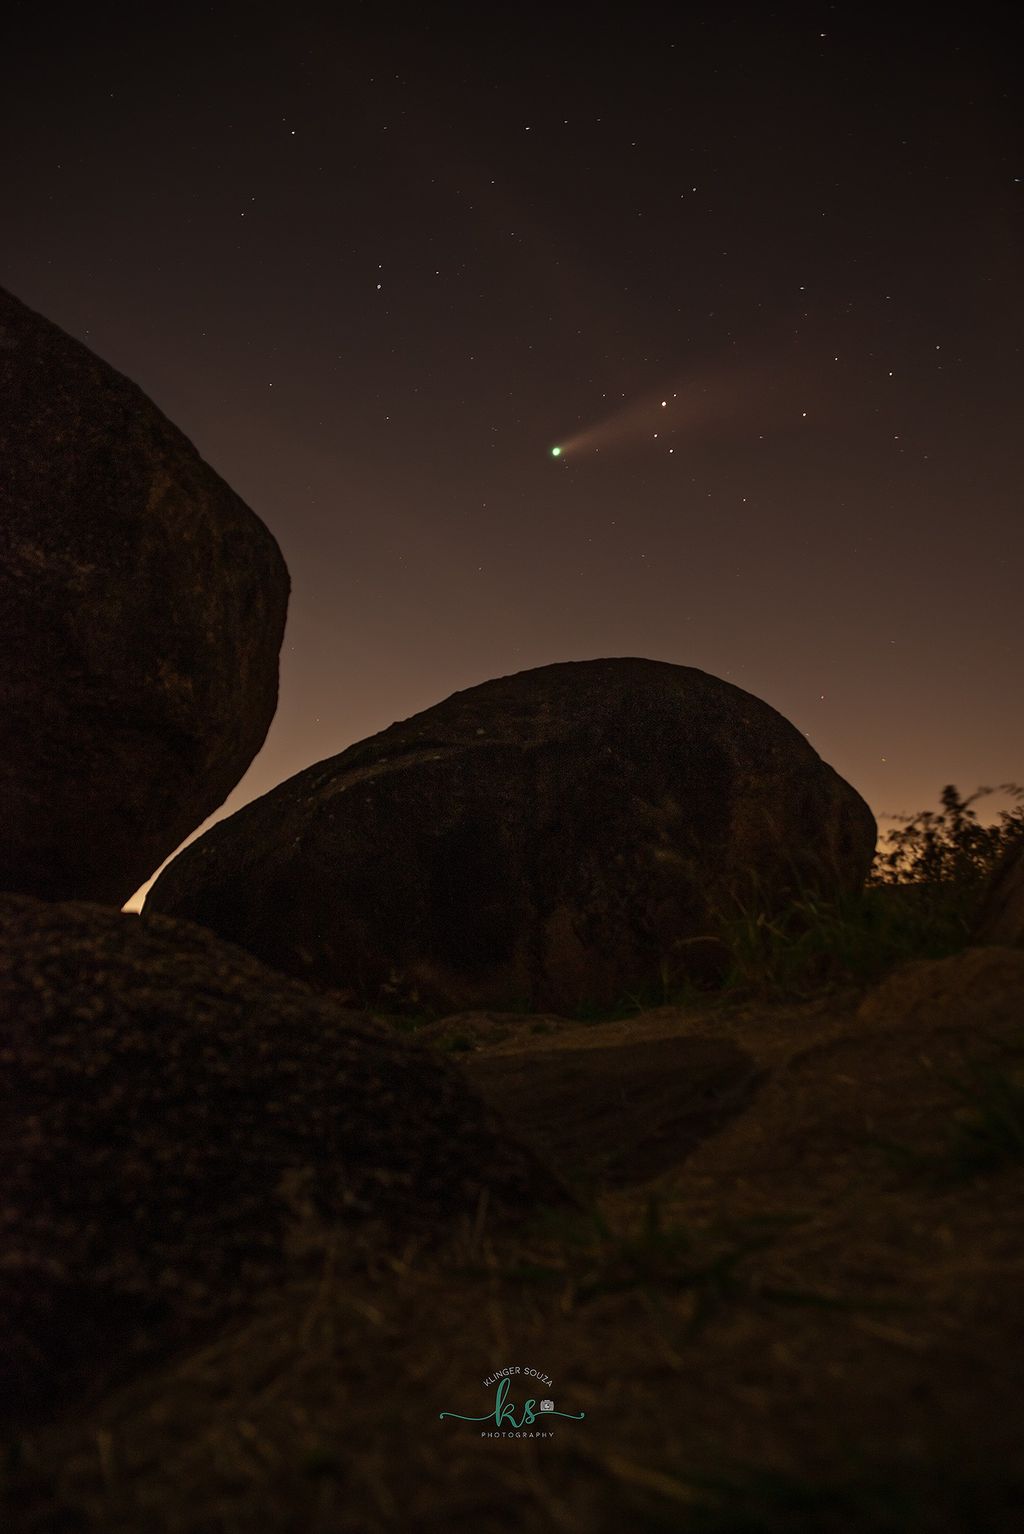 Outro registro do cometa em Indaiatuba, São Paulo (Foto: Reprodução/Klinger Souza)